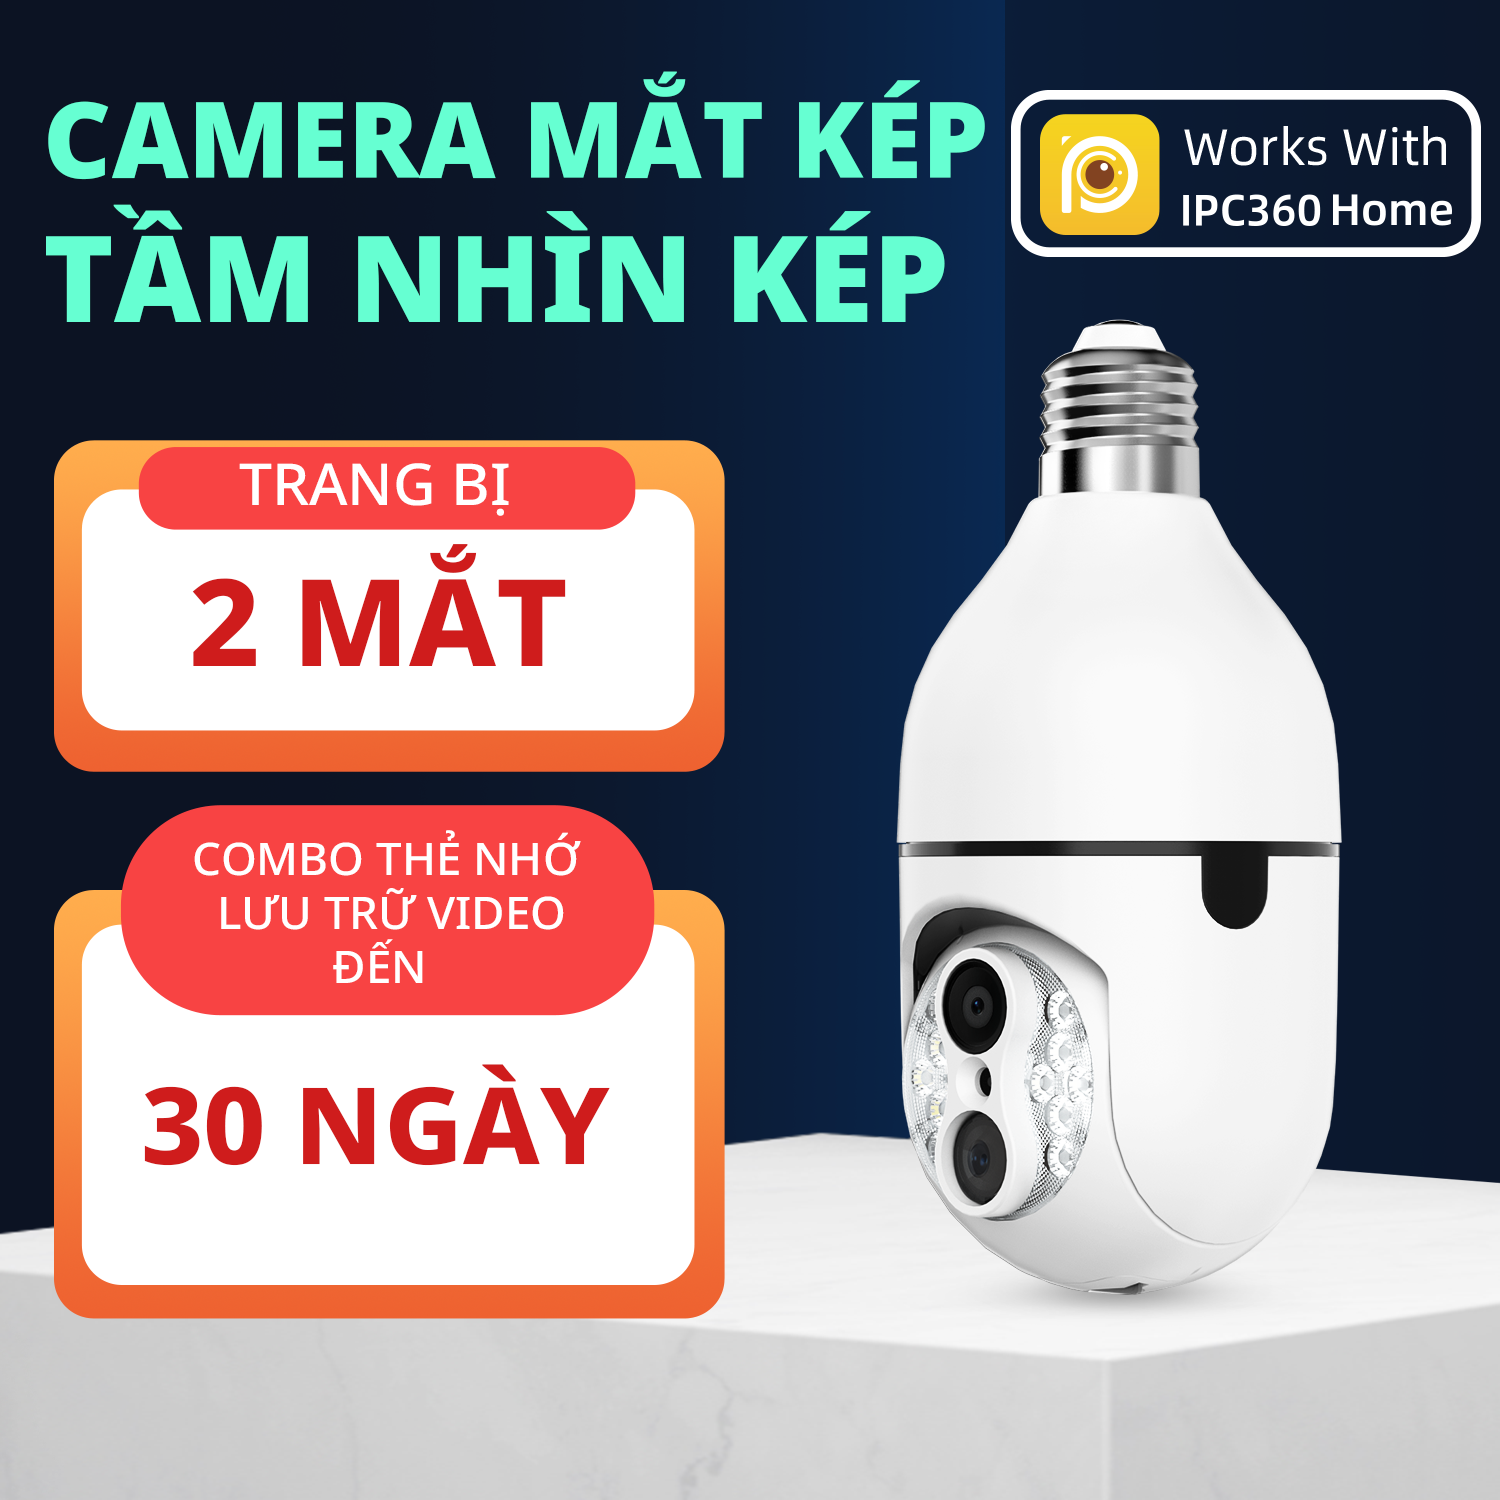 Camera Wifi IPC360 Home chuôi bóng đèn NDP2-10 1080P (FHD), xoay ngang 360 độ, thu phóng 8 lần (Hàng nhập khẩu)